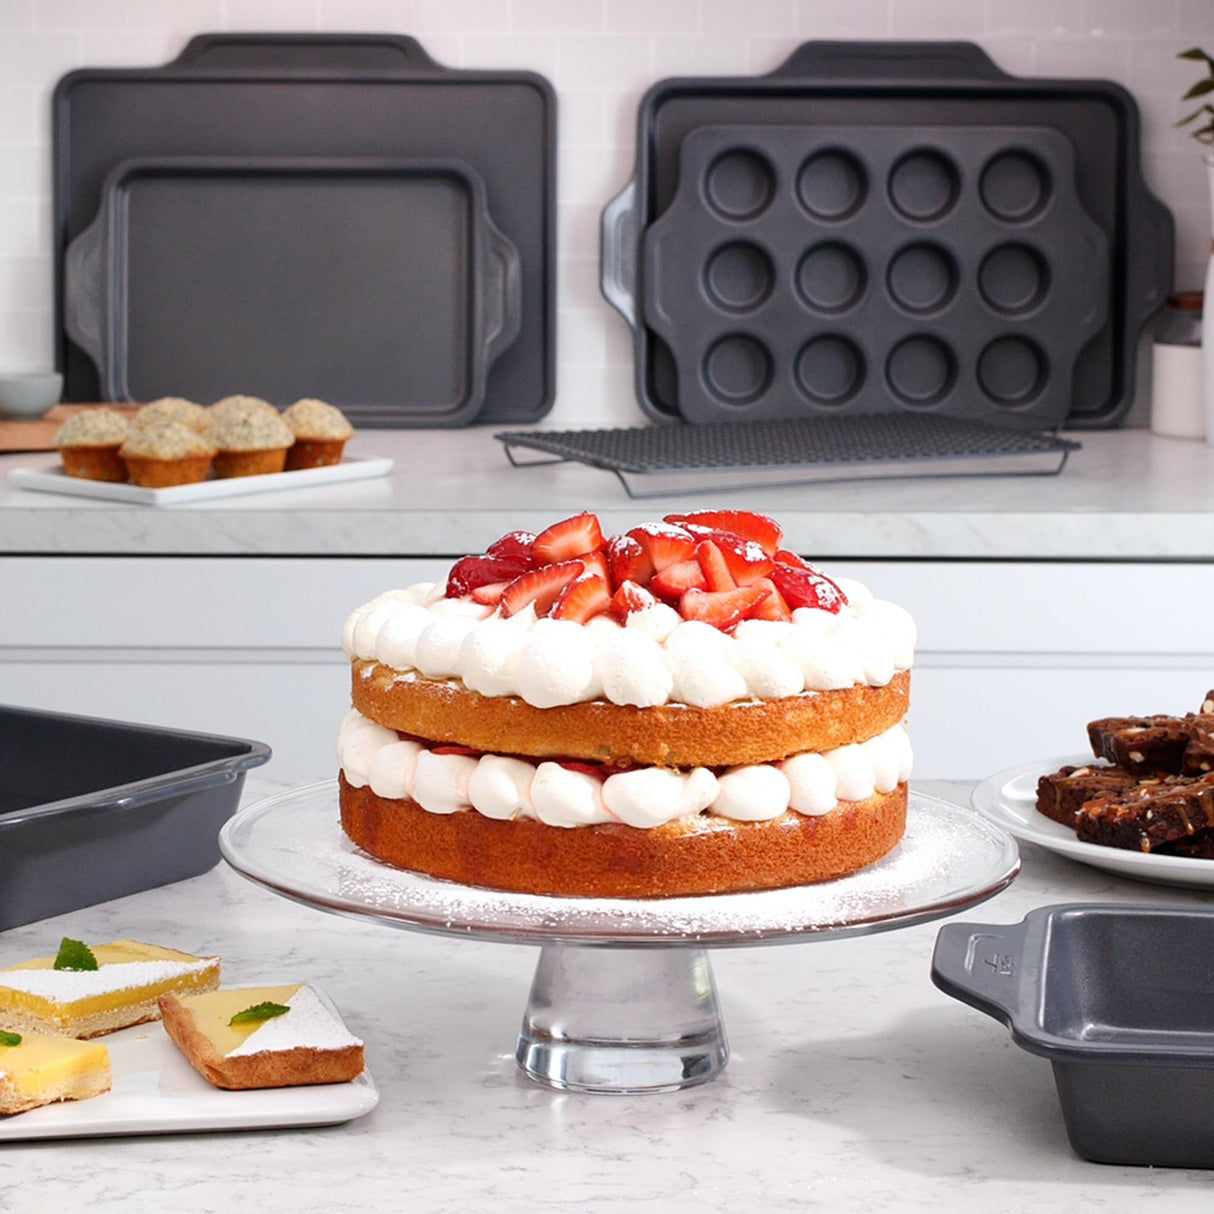 All-Clad Pro-Release Nonstick Bakeware Set 10 Piece Oven Safe 450F Half Sheet, Cookie Sheet, Muffin Pan, Cooling & Baking Rack, Round Cake Pan, Loaf Pan, Baking Pan Grey